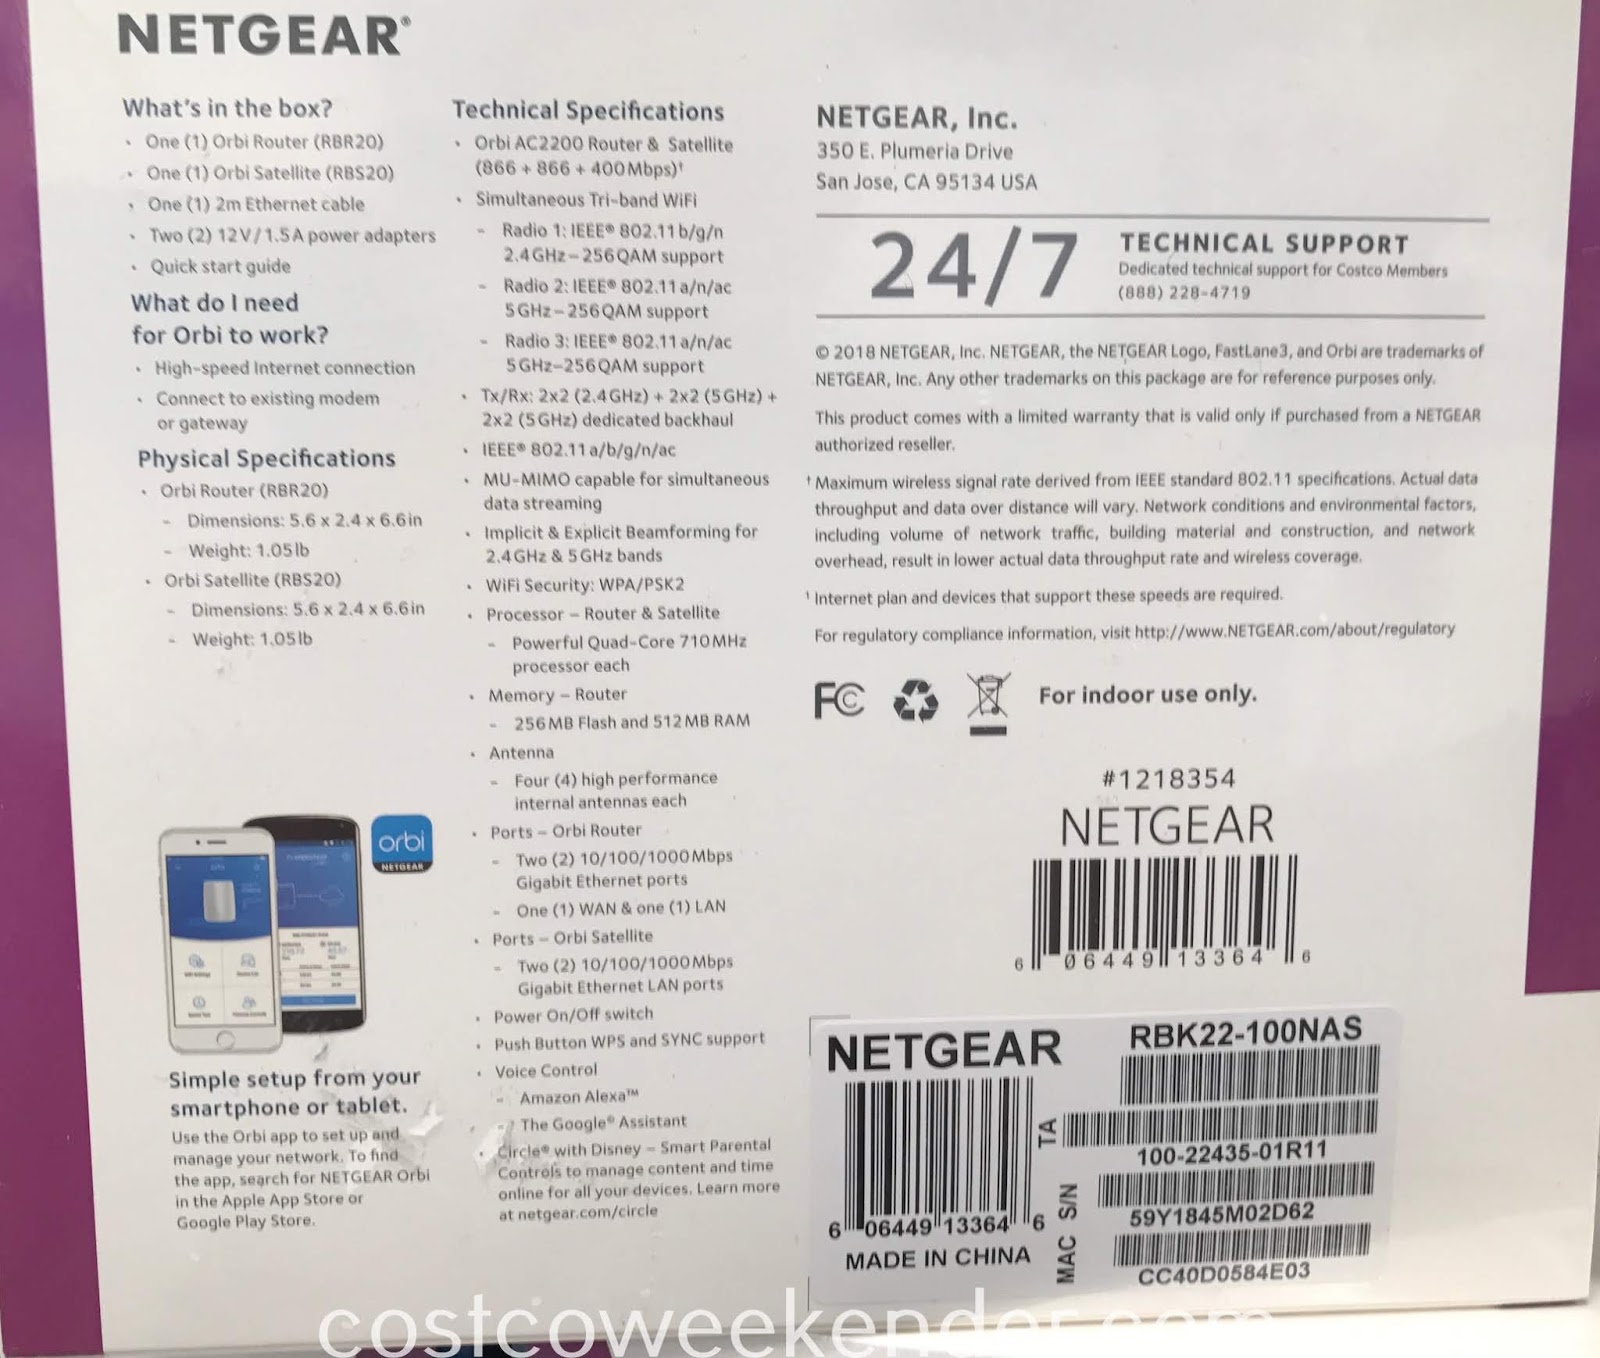 Netgear Orbi WiFi System AC2200 (RBK22) (2 pack) | Costco Weekender